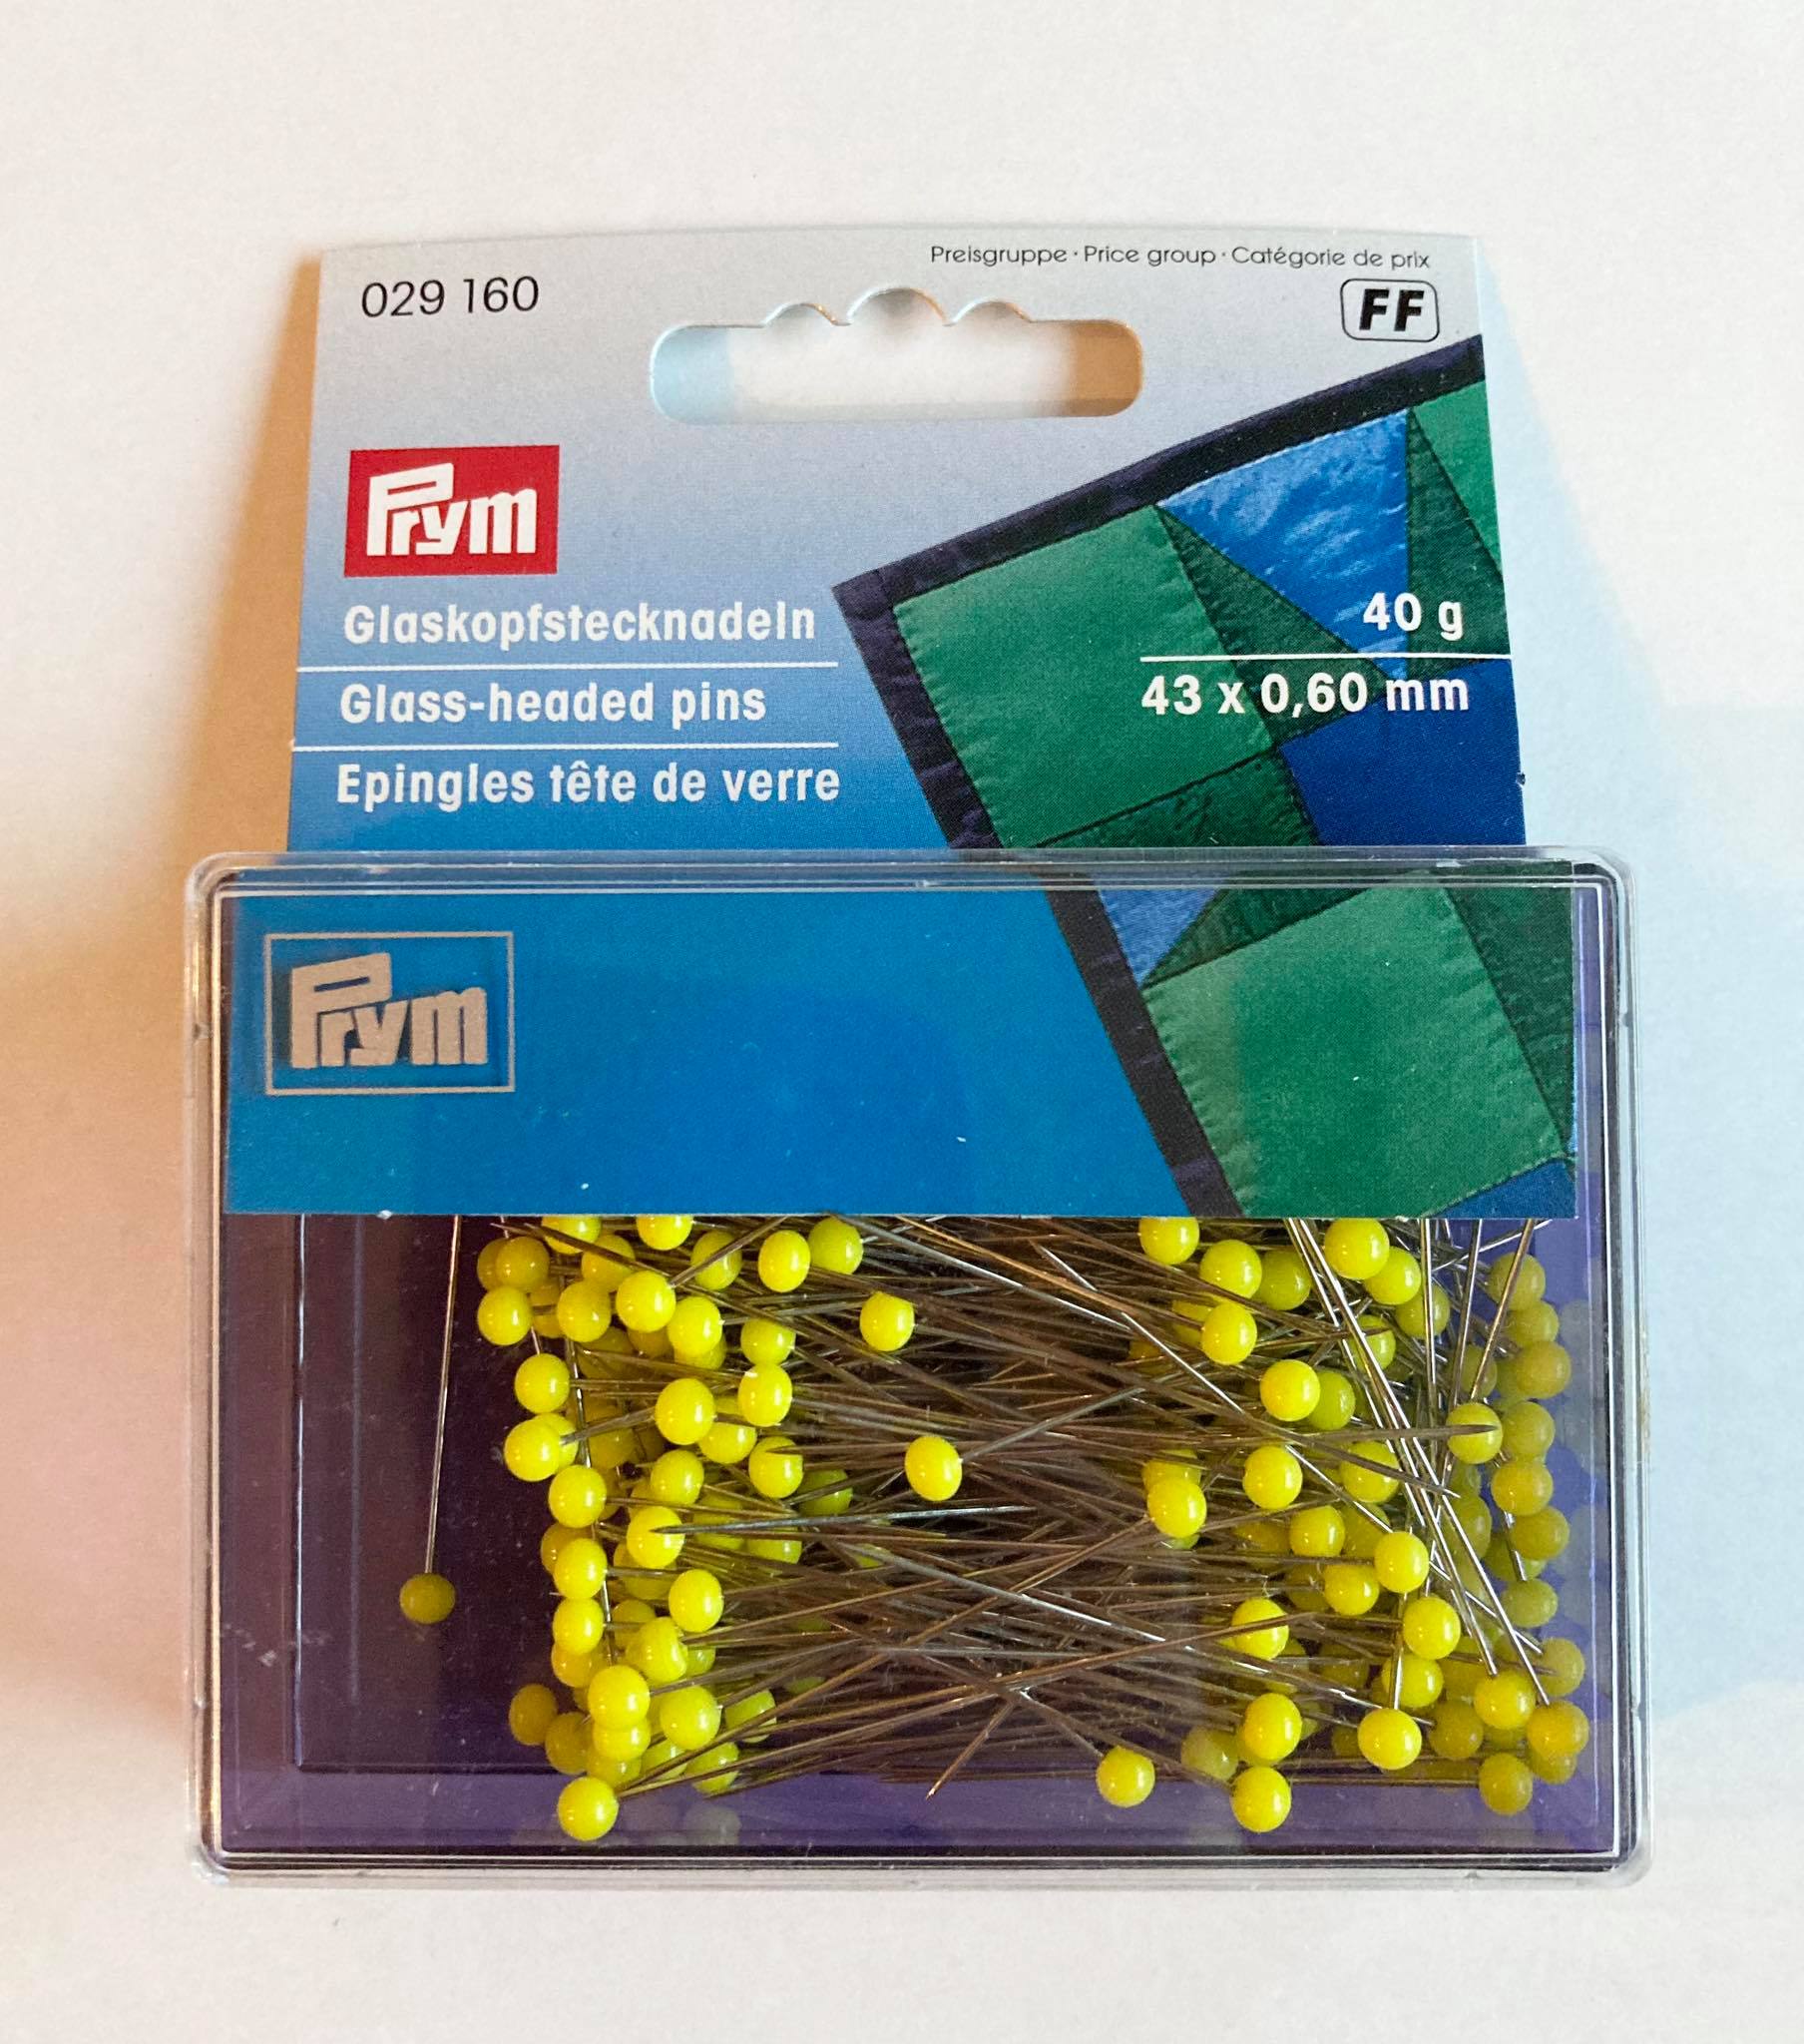 Prym Glass-headed pins, 0.60 x 43mm, yellow, 40g / เข็มหัวแก้วสีเหลือง ขนาด 0.60 x 43 มิลลิเมตร 40 กรัม แบรนด์ Prym จากประเทศเยอรมนี (G029160)